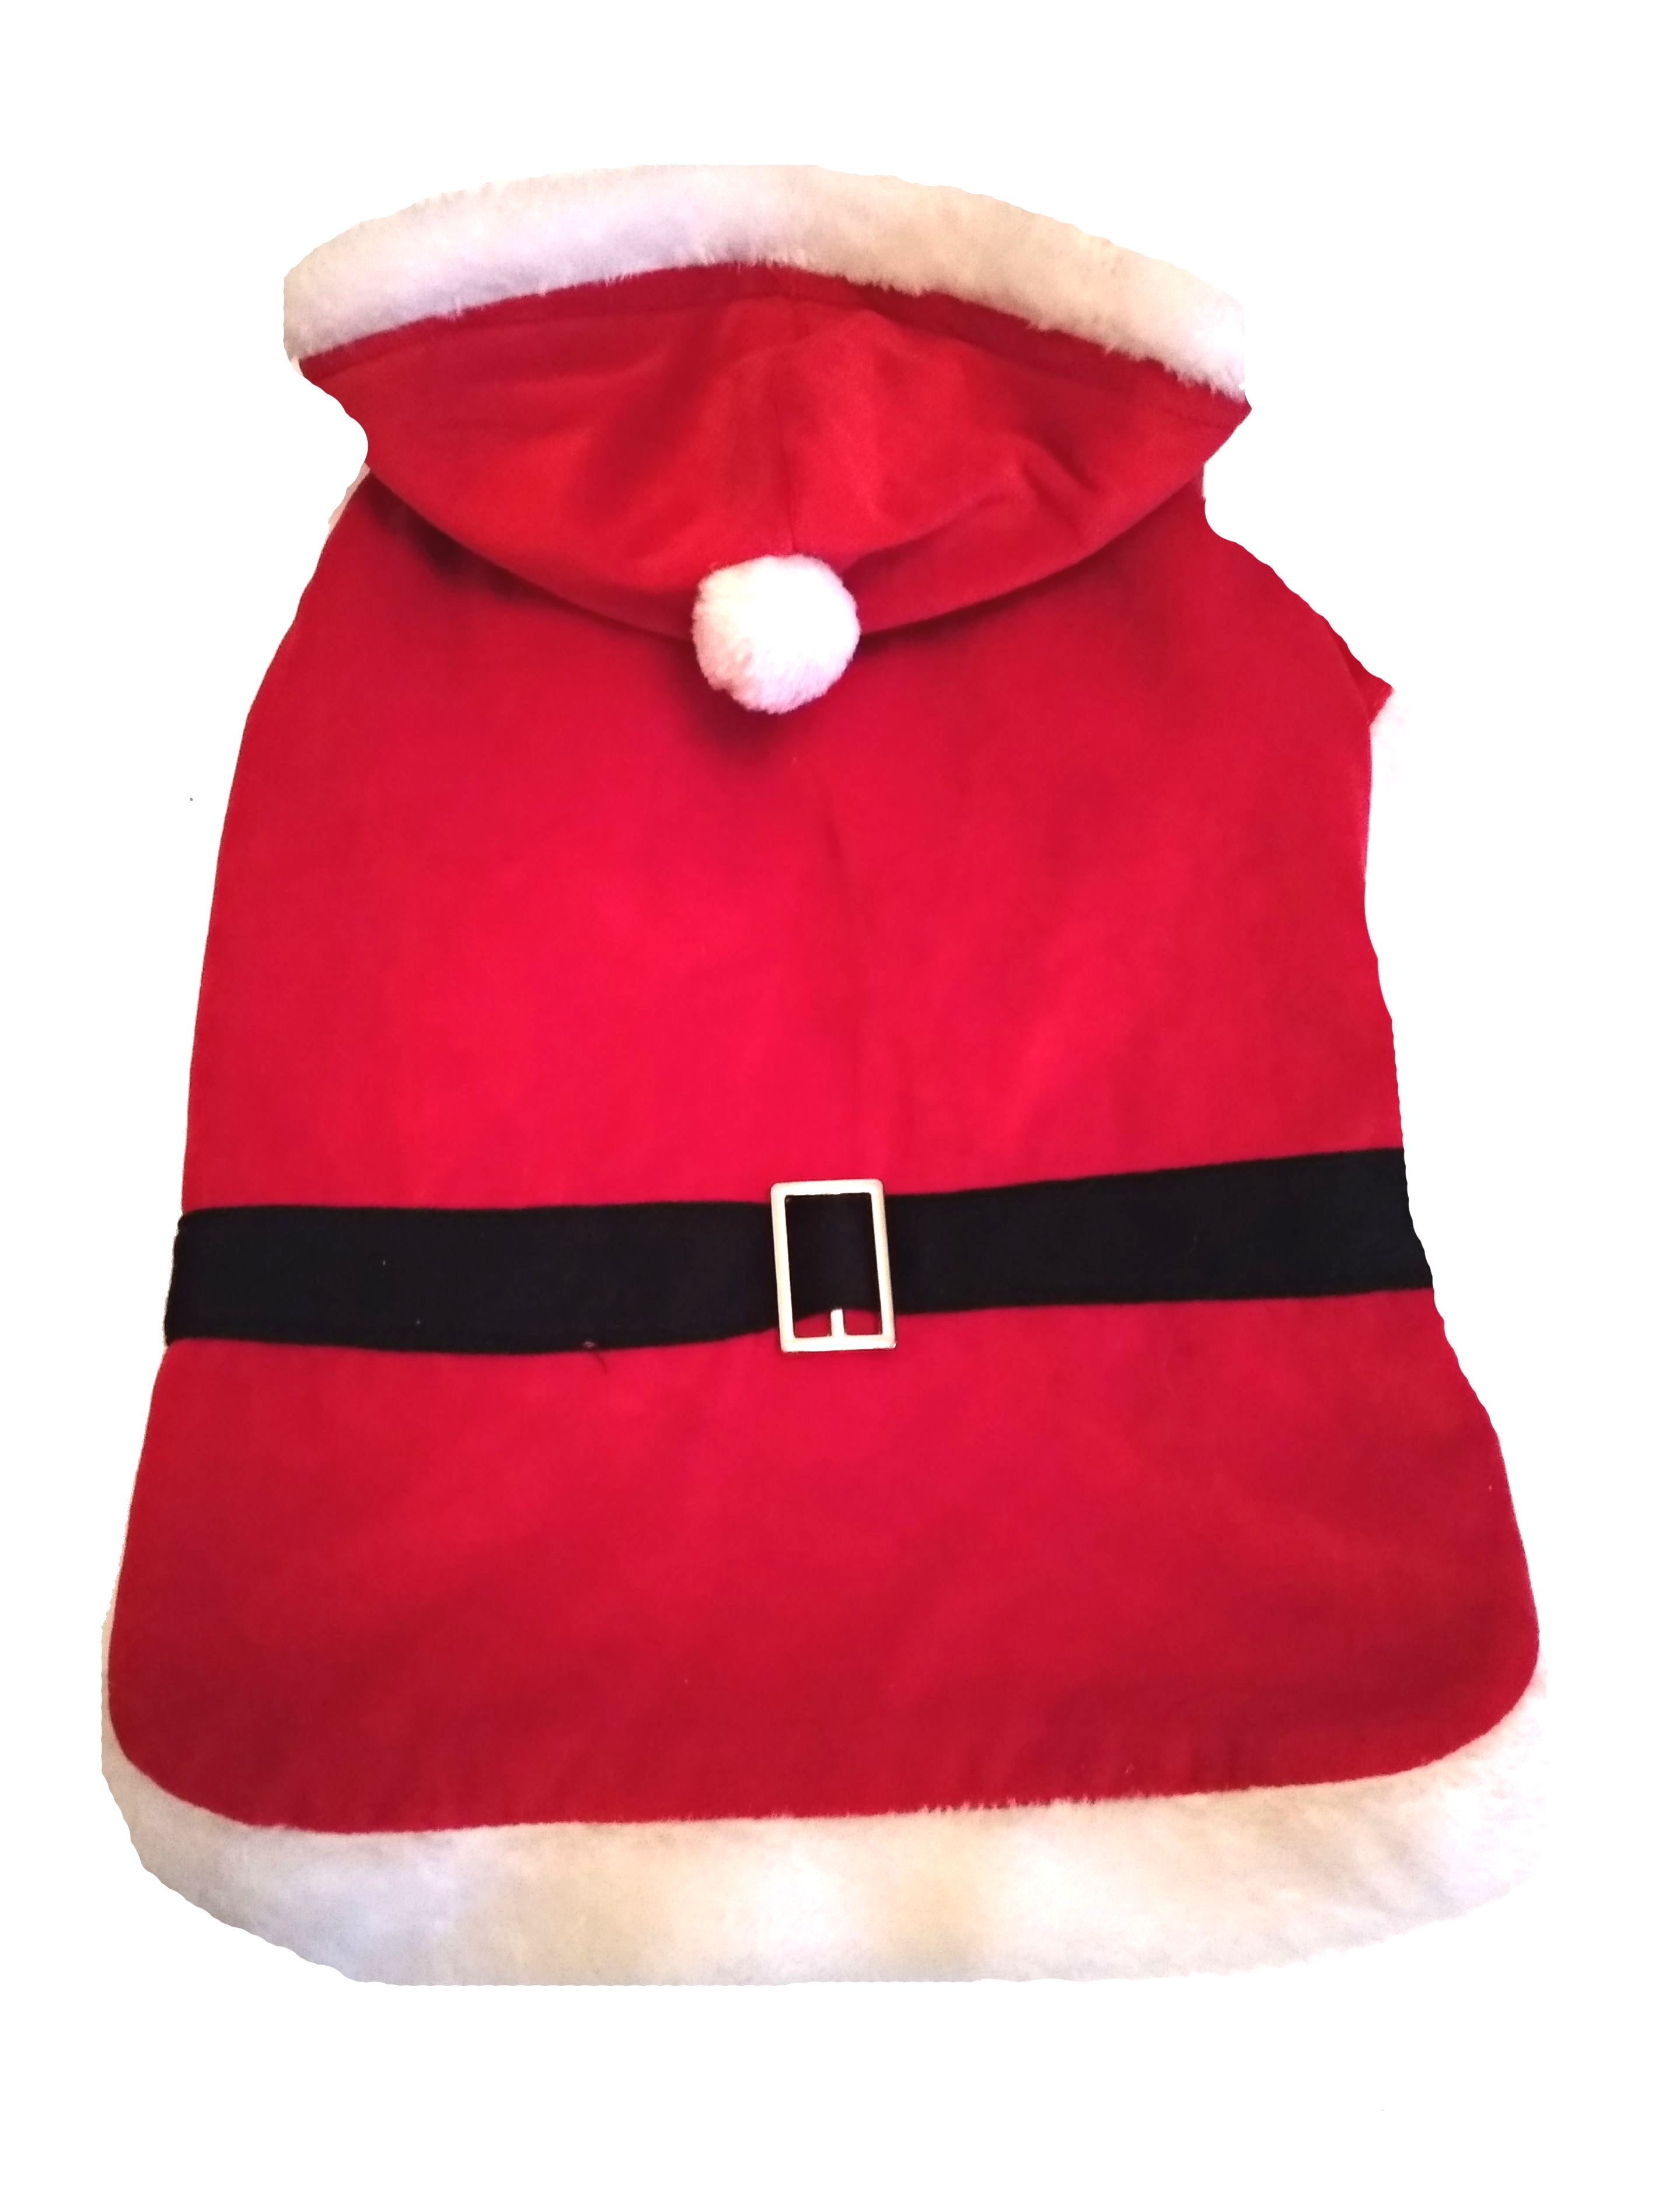 Karácsonyi kutyaruha, kötött pulóver. Háthossz 32 cm. 